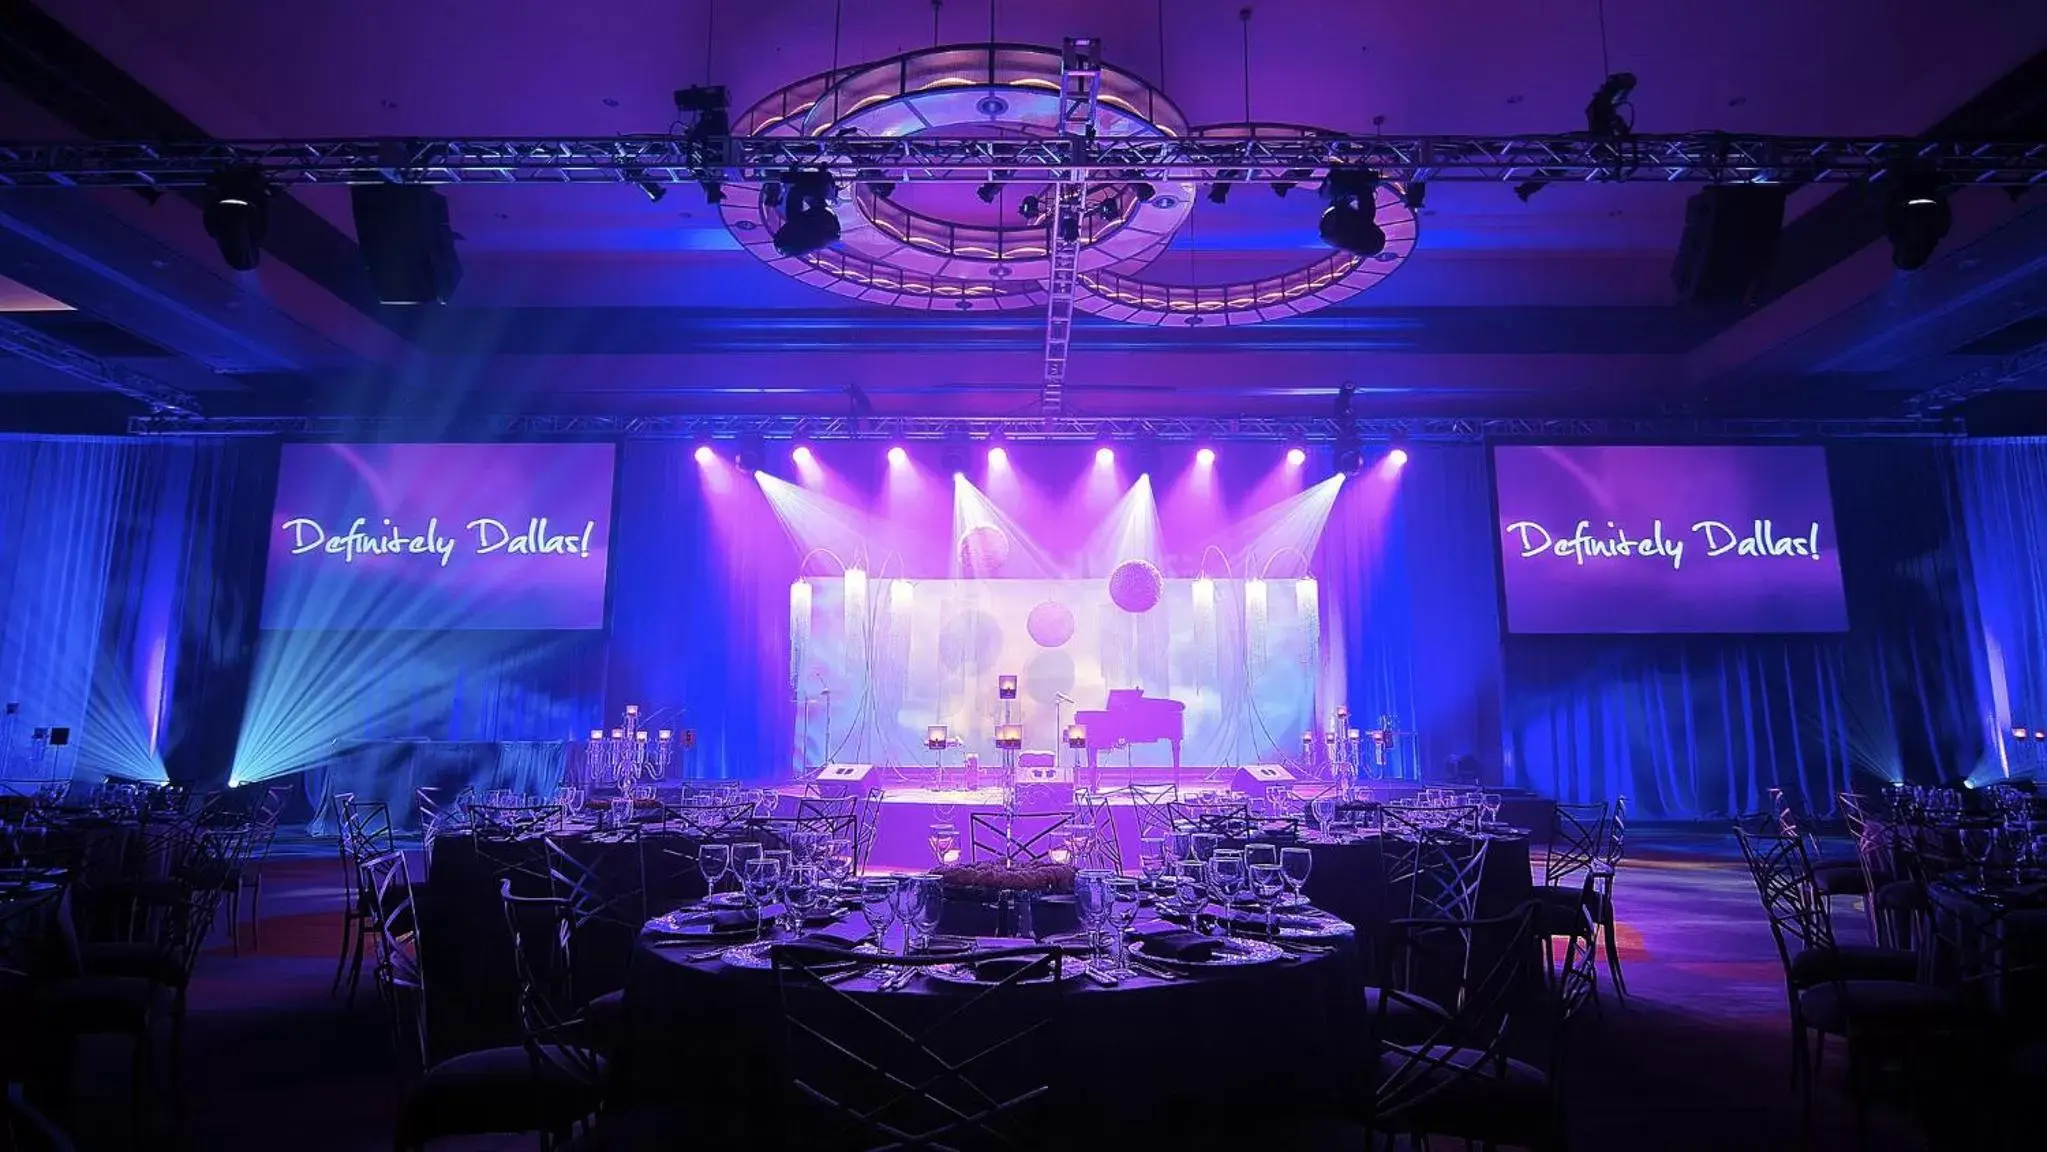 Banquet/Function facilities, Banquet Facilities in Omni Dallas Hotel